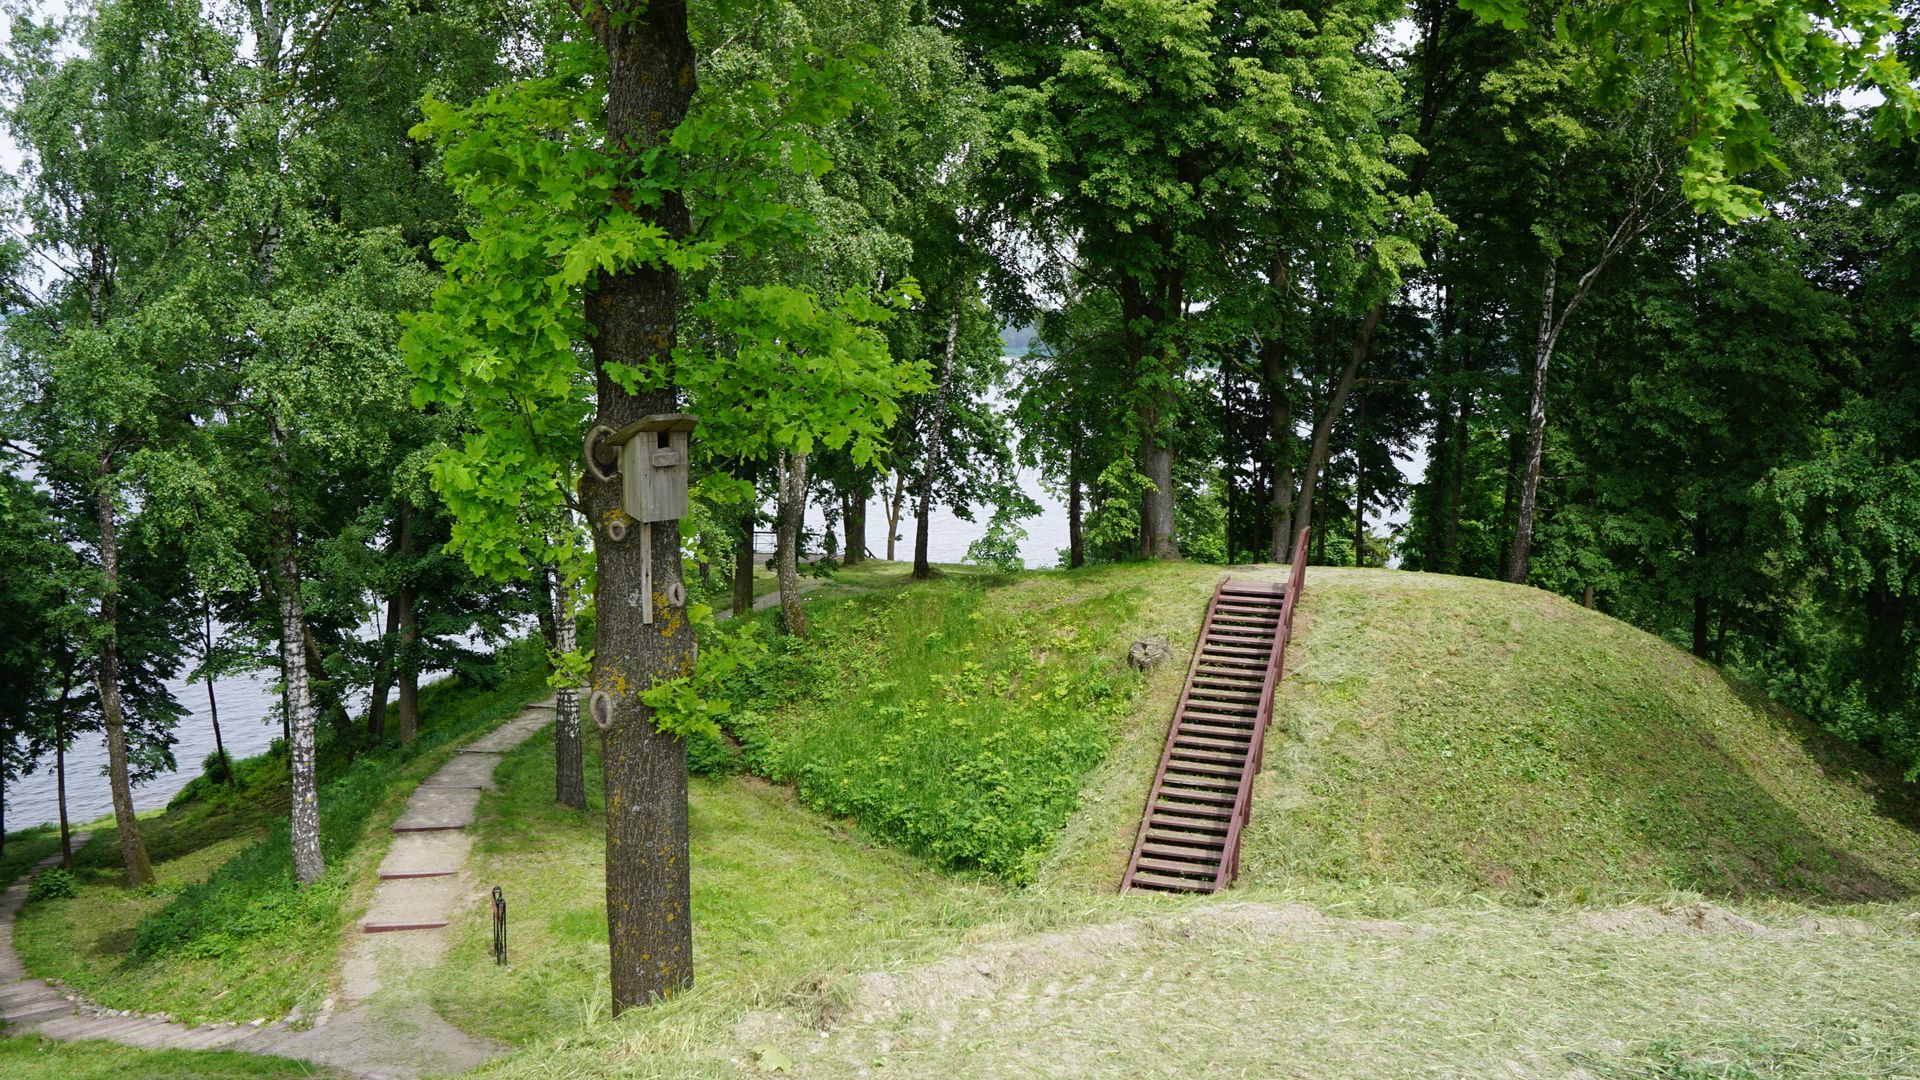 Pakalniškiai Mound